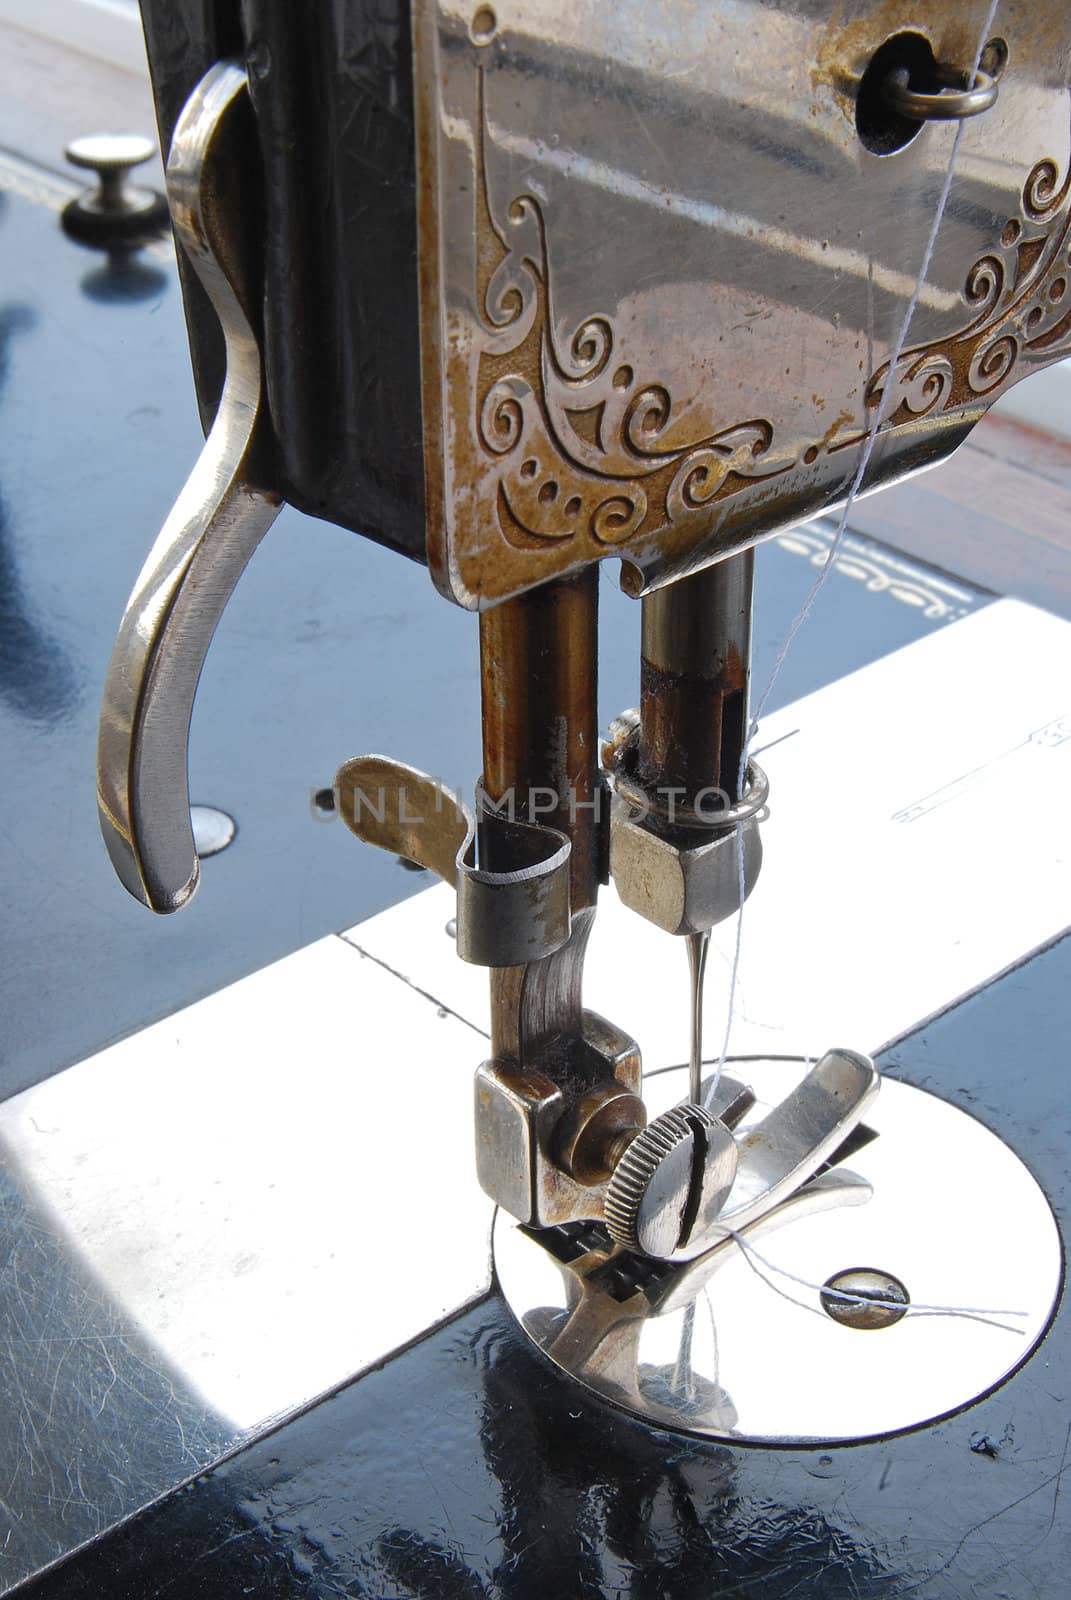 Old sewing machine details by varbenov